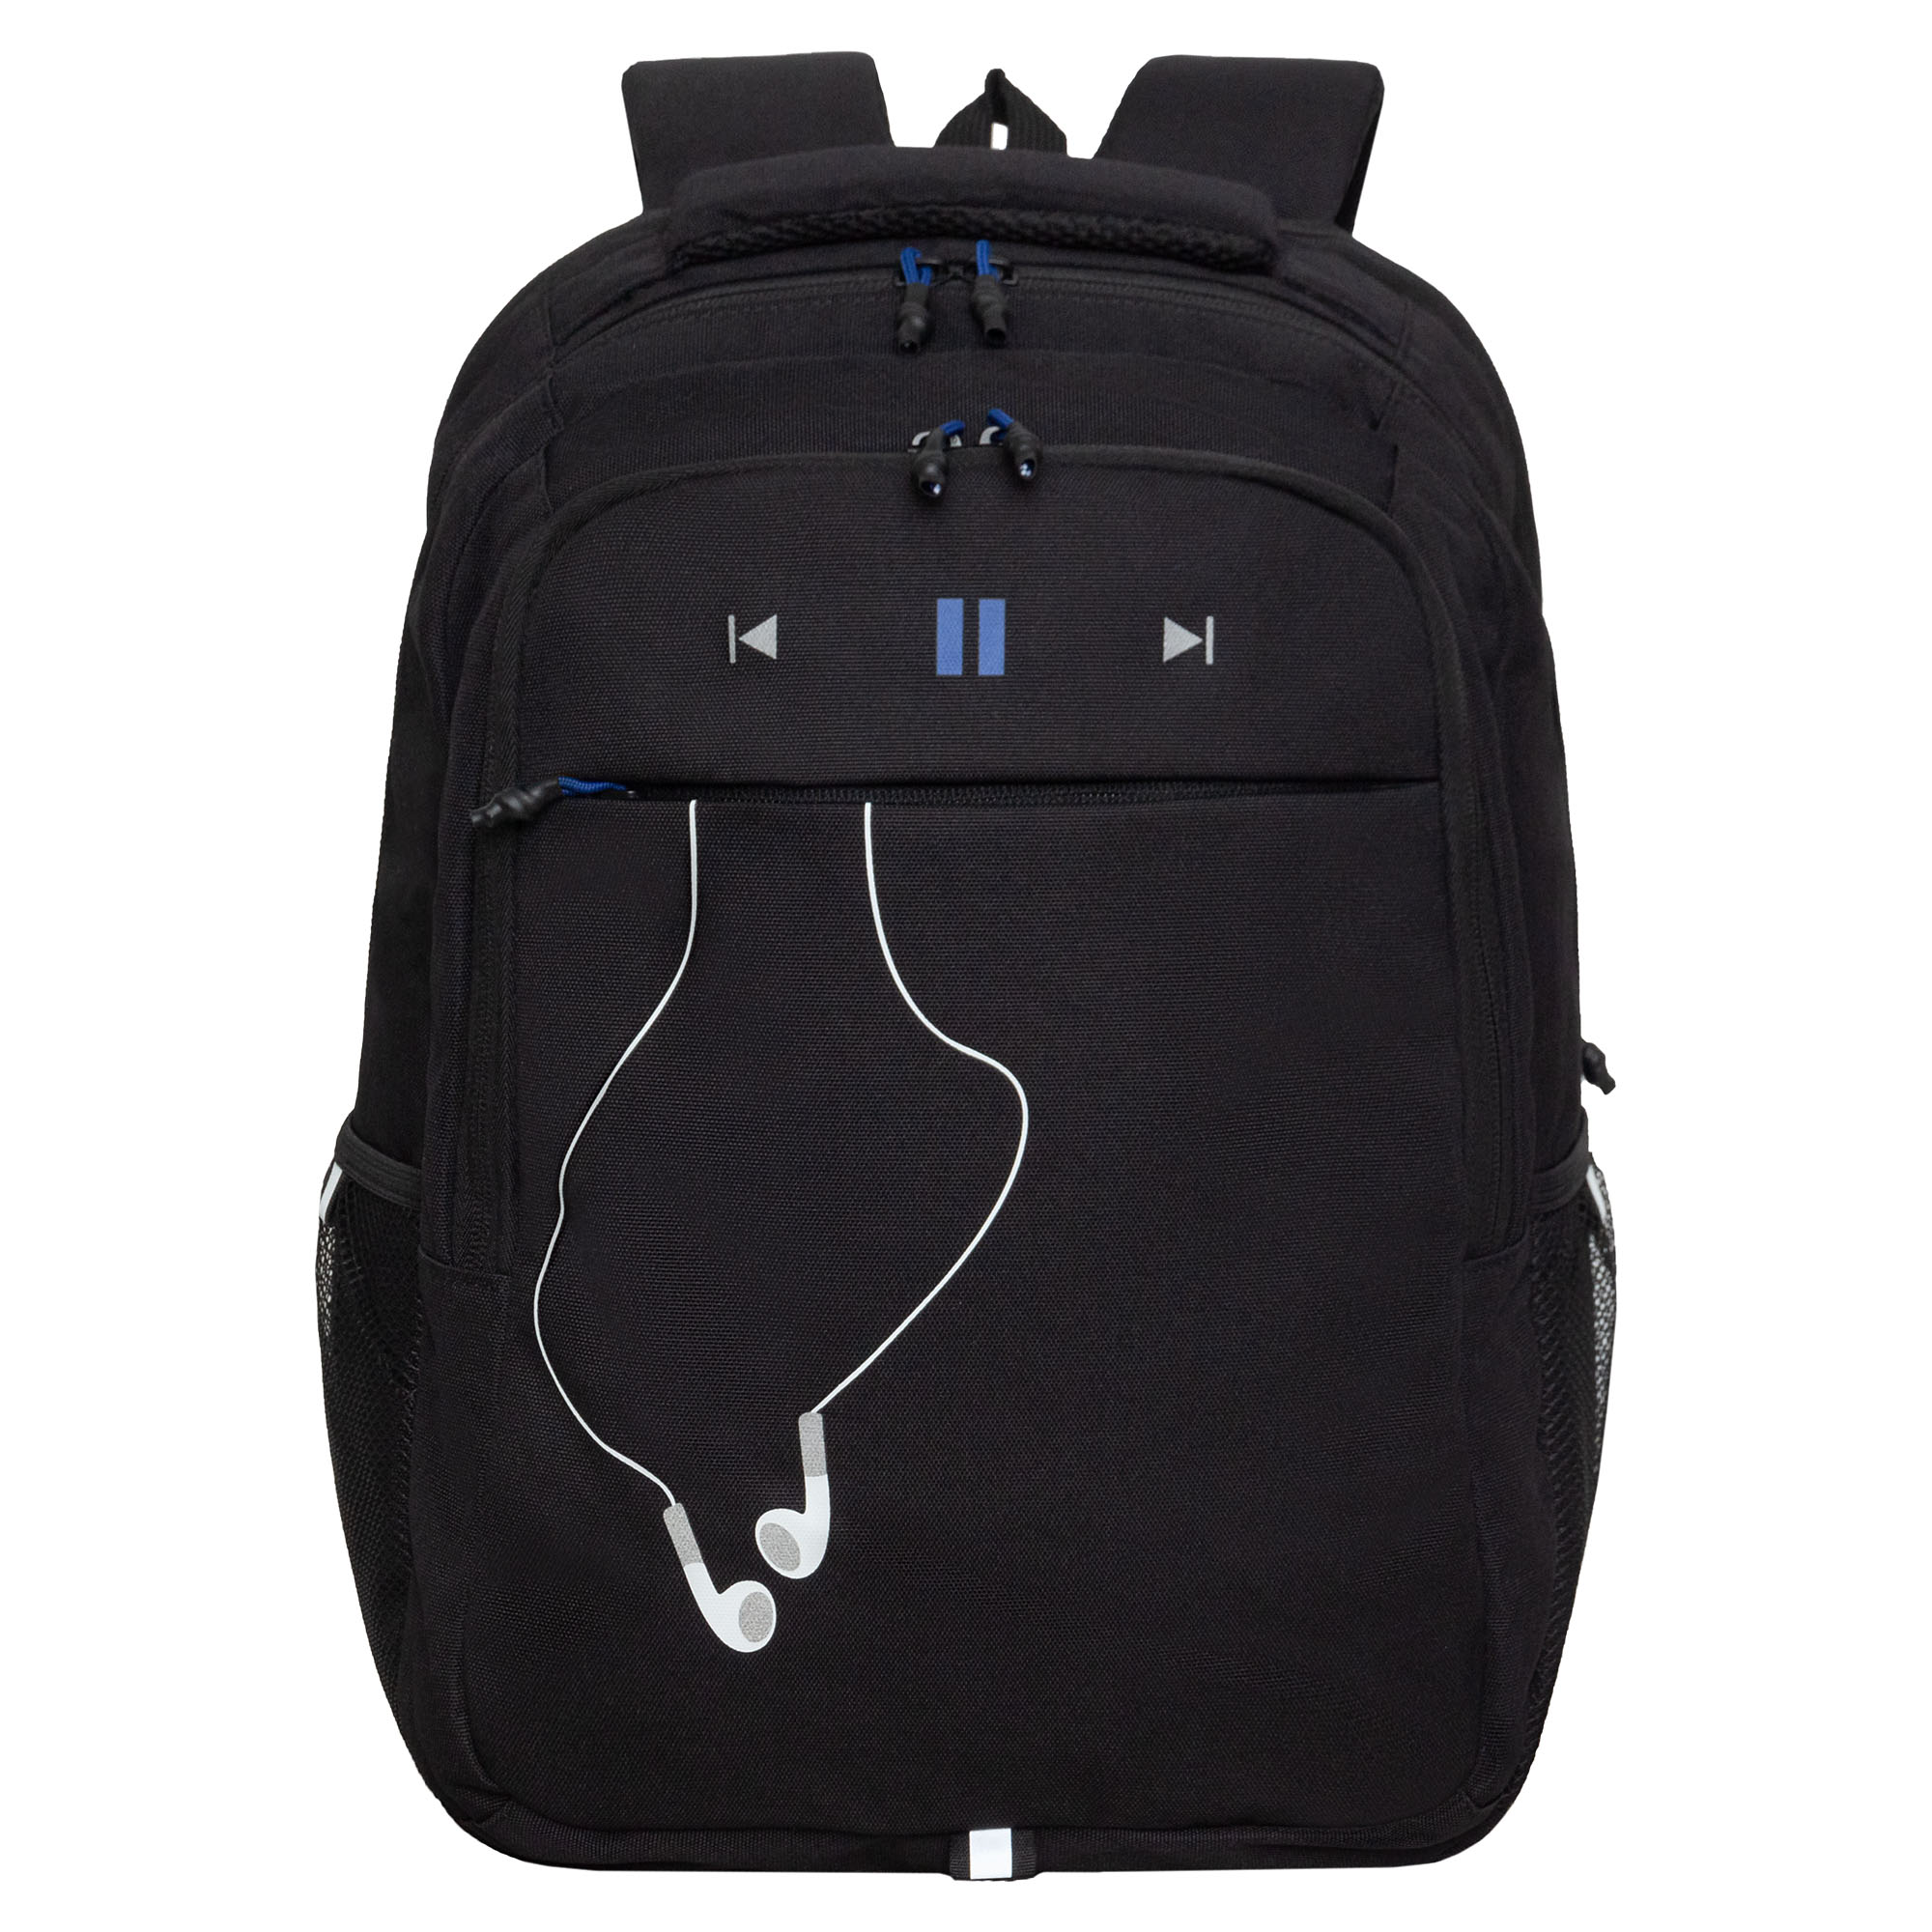 Рюкзак молодежный Grizzly с карманом для ноутбука 15, RU-432-4/3, черный, синий рюкзак молодежный grizzly rd 440 4 1 с карманом для ноутбука 13 золото